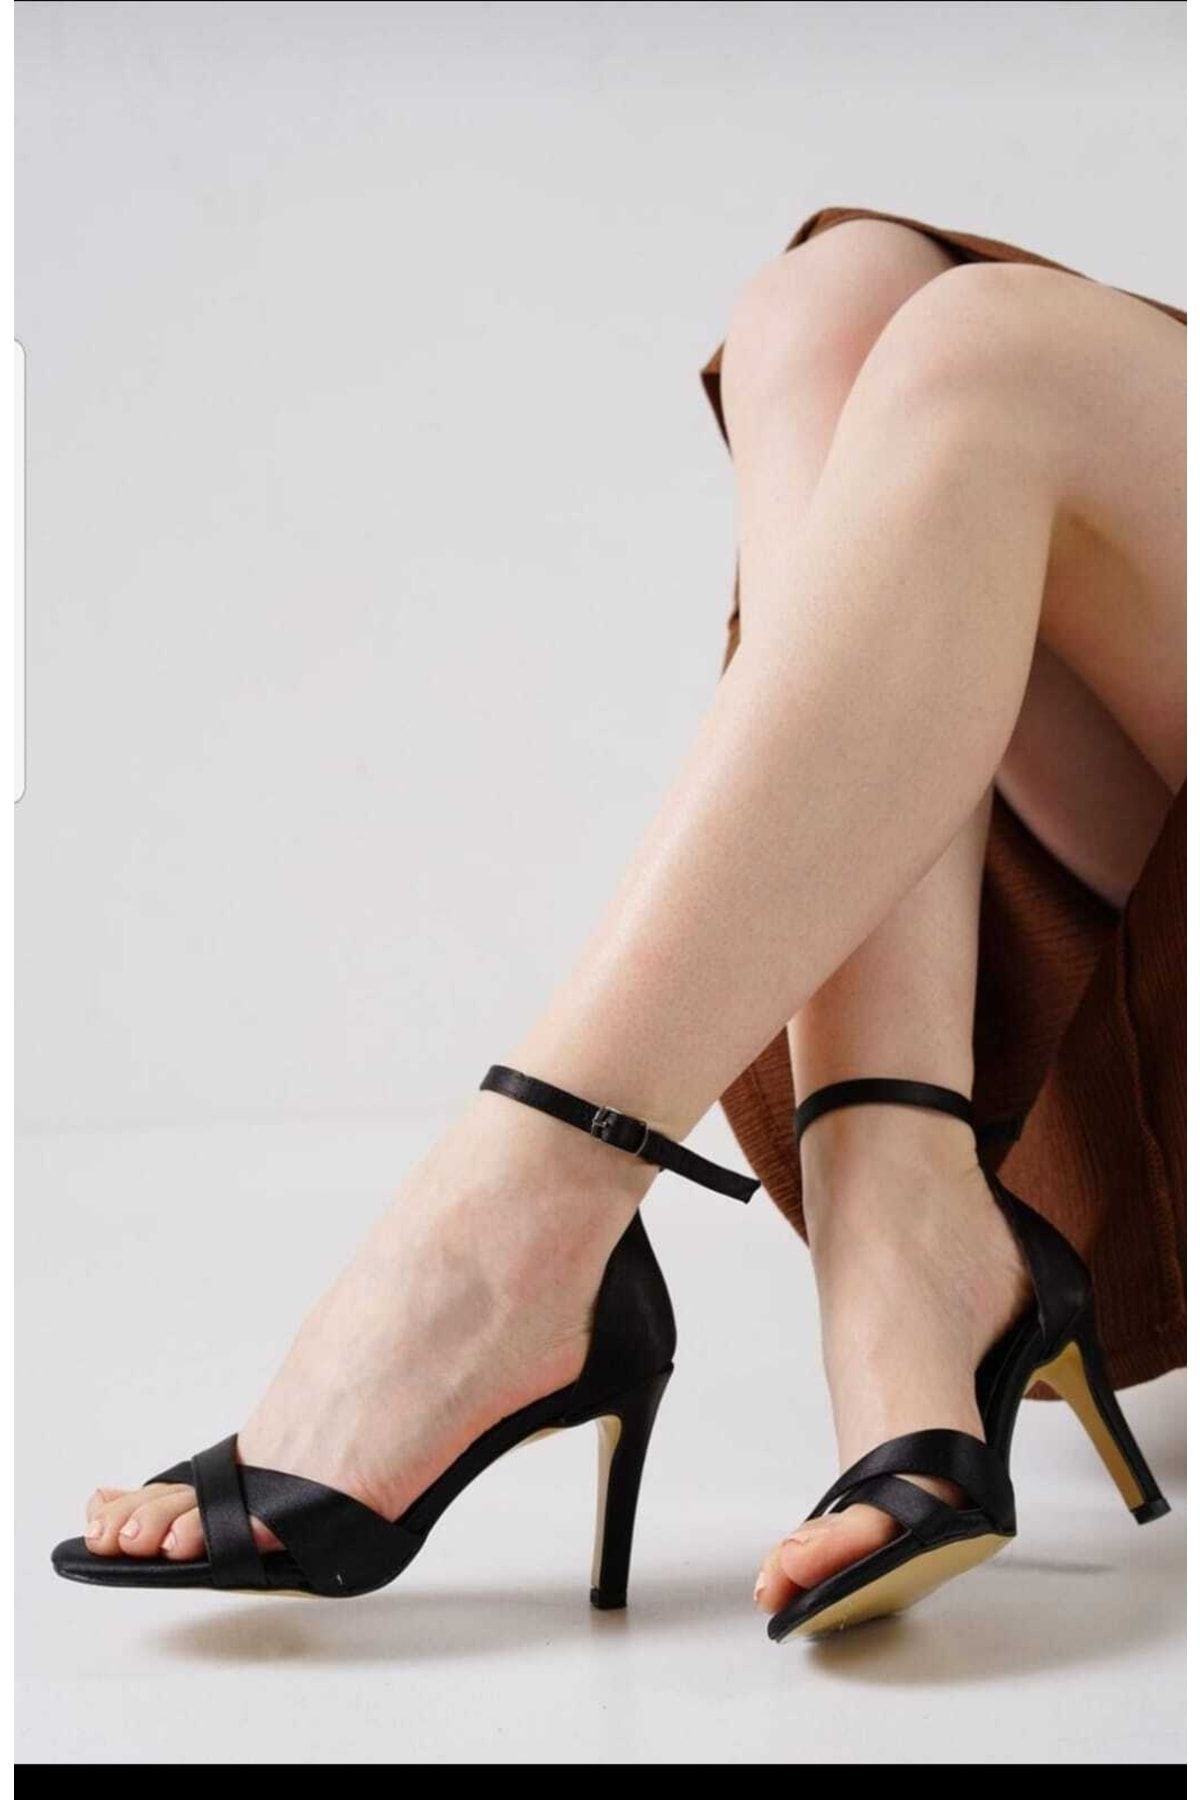 SERAN DESİGN TRADE Siyah Saten Çapraz Bant Ince Topuk Tek Bant Kadın Topuklu Ayakkabı